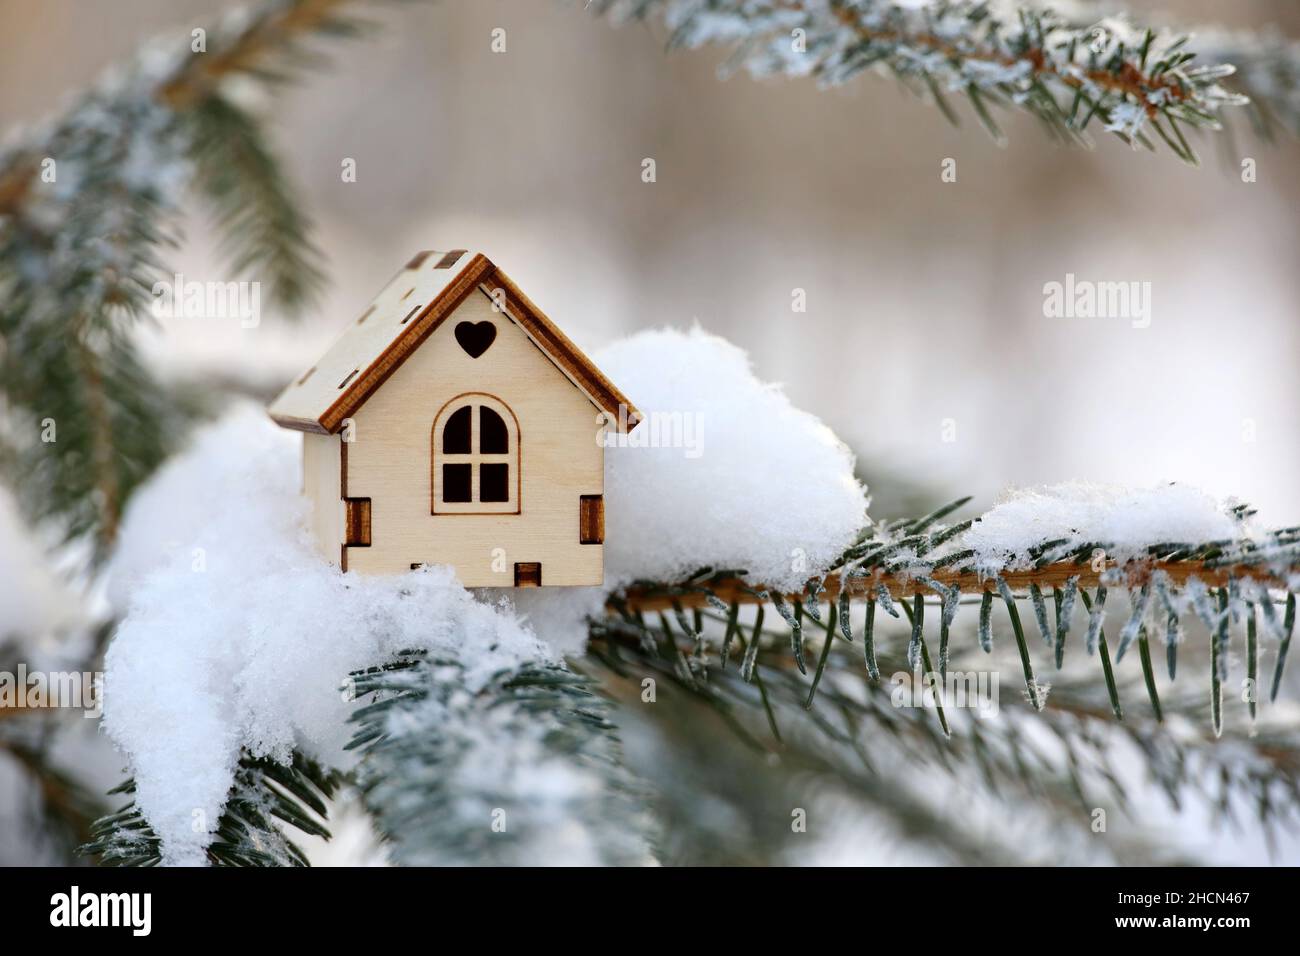 Modèle de maison en bois dans une neige sur branche de sapin.Concept de la vente d'hiver du nouvel an, gagnant la loterie de logement, immobilier dans un secteur écologiquement propre Banque D'Images